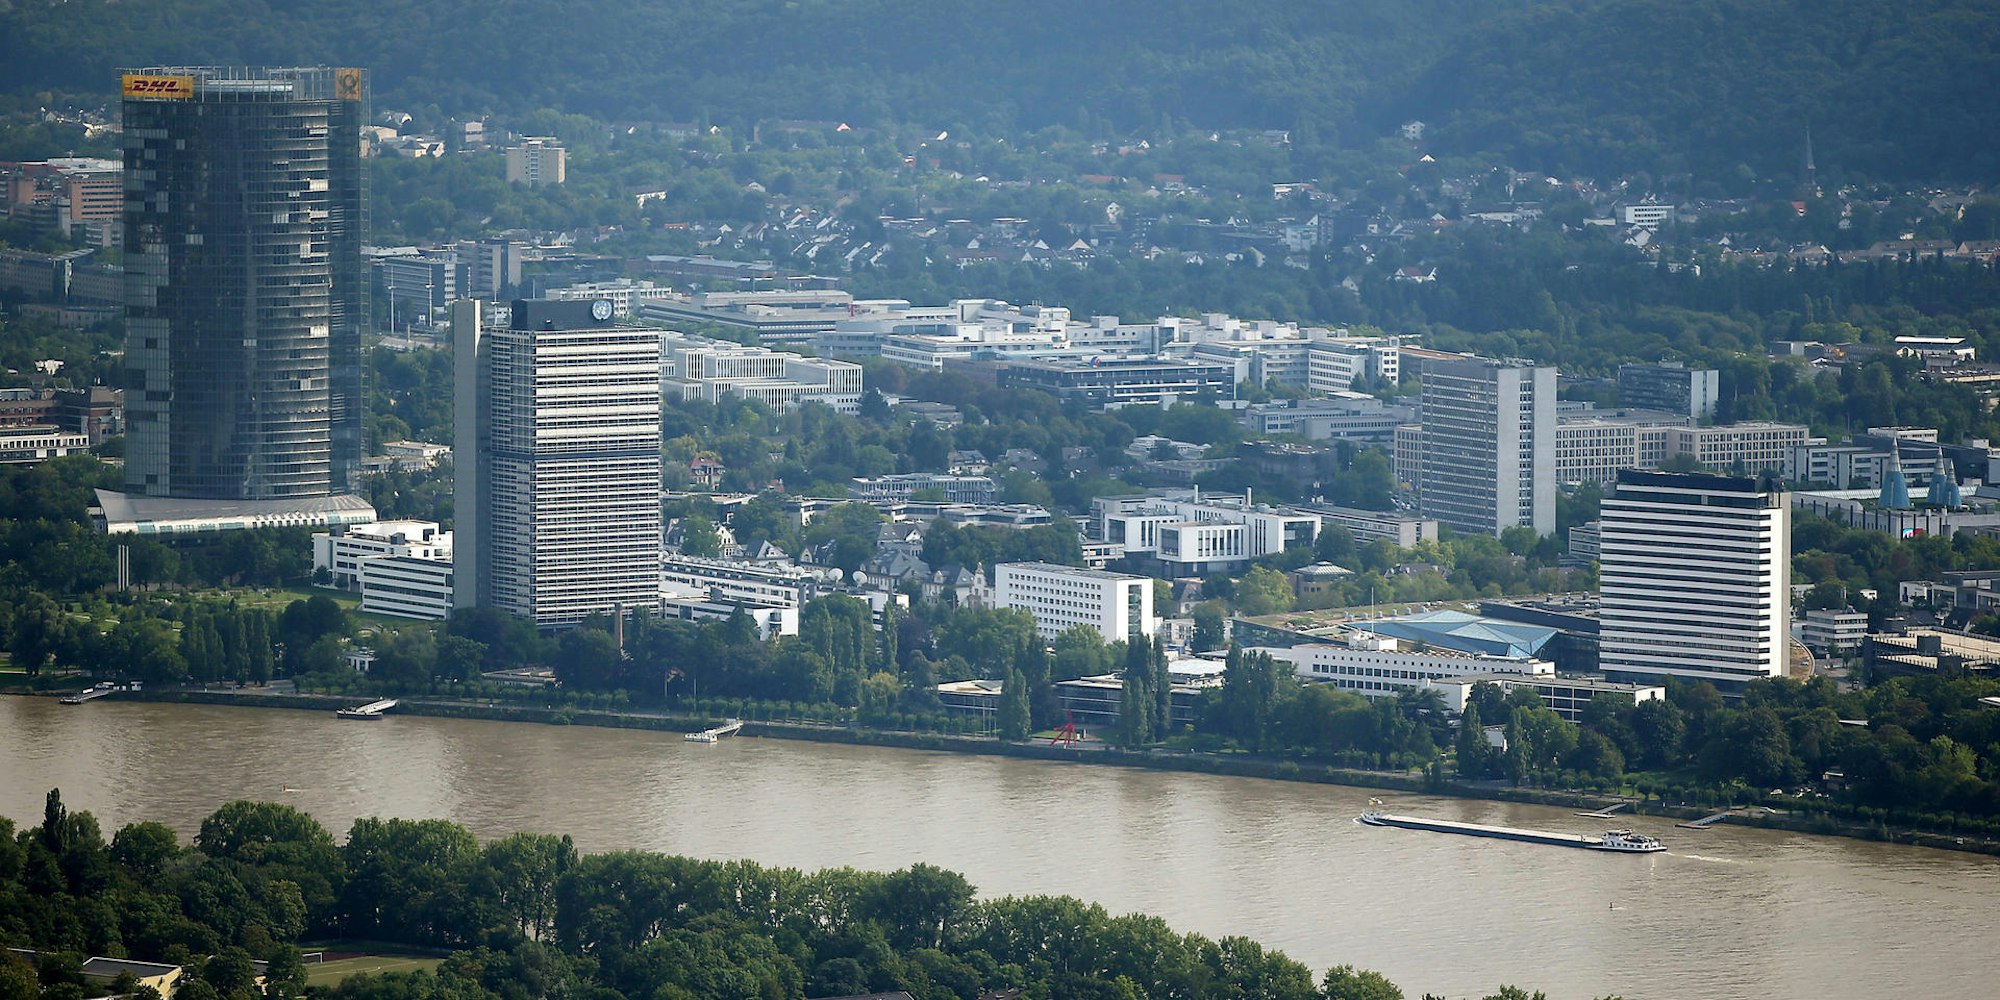 Bonn aus der Luft